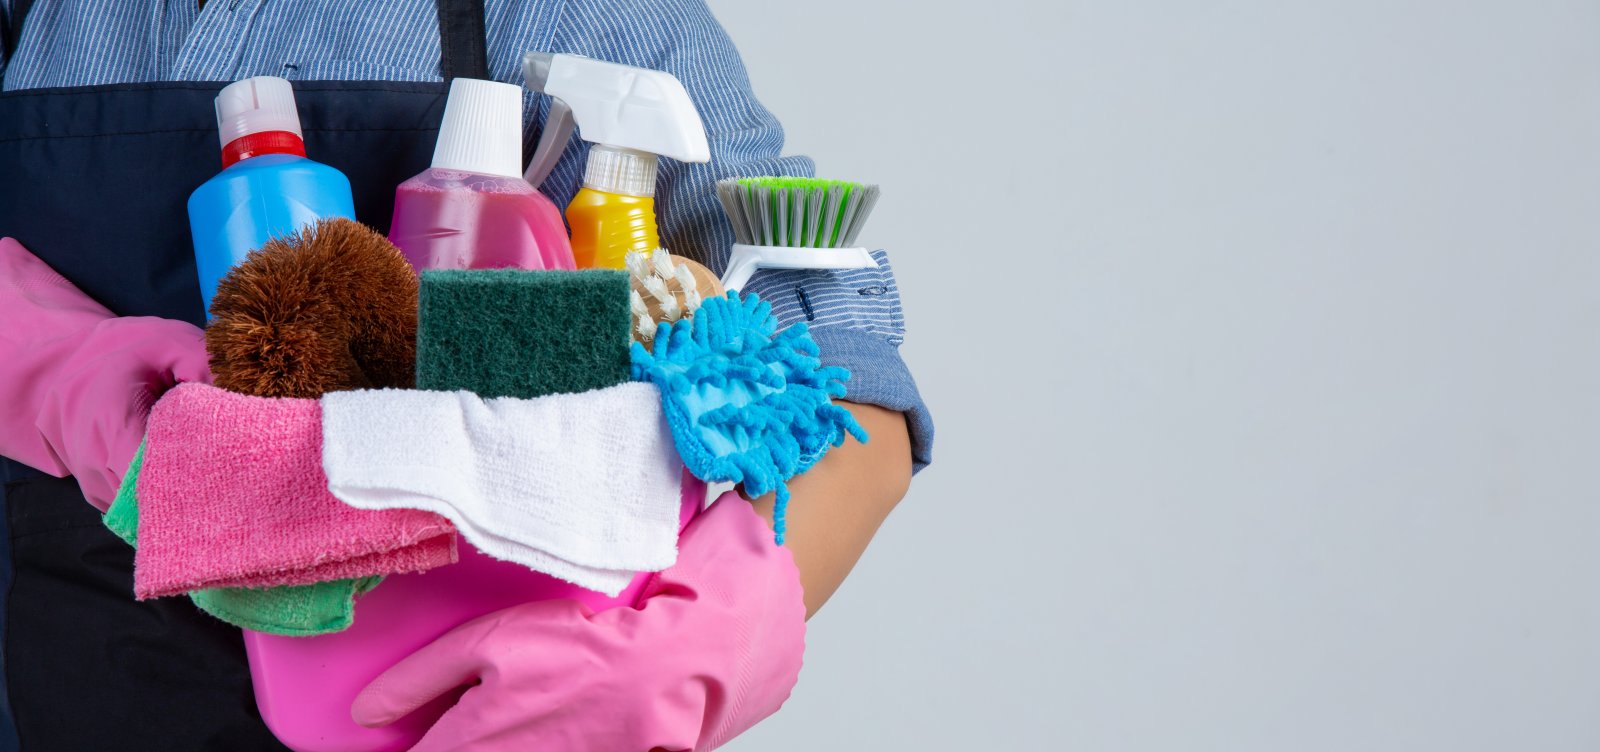 [Desigualdade: mulheres dedicam quase dobro do tempo do que homens em tarefas domésticas]